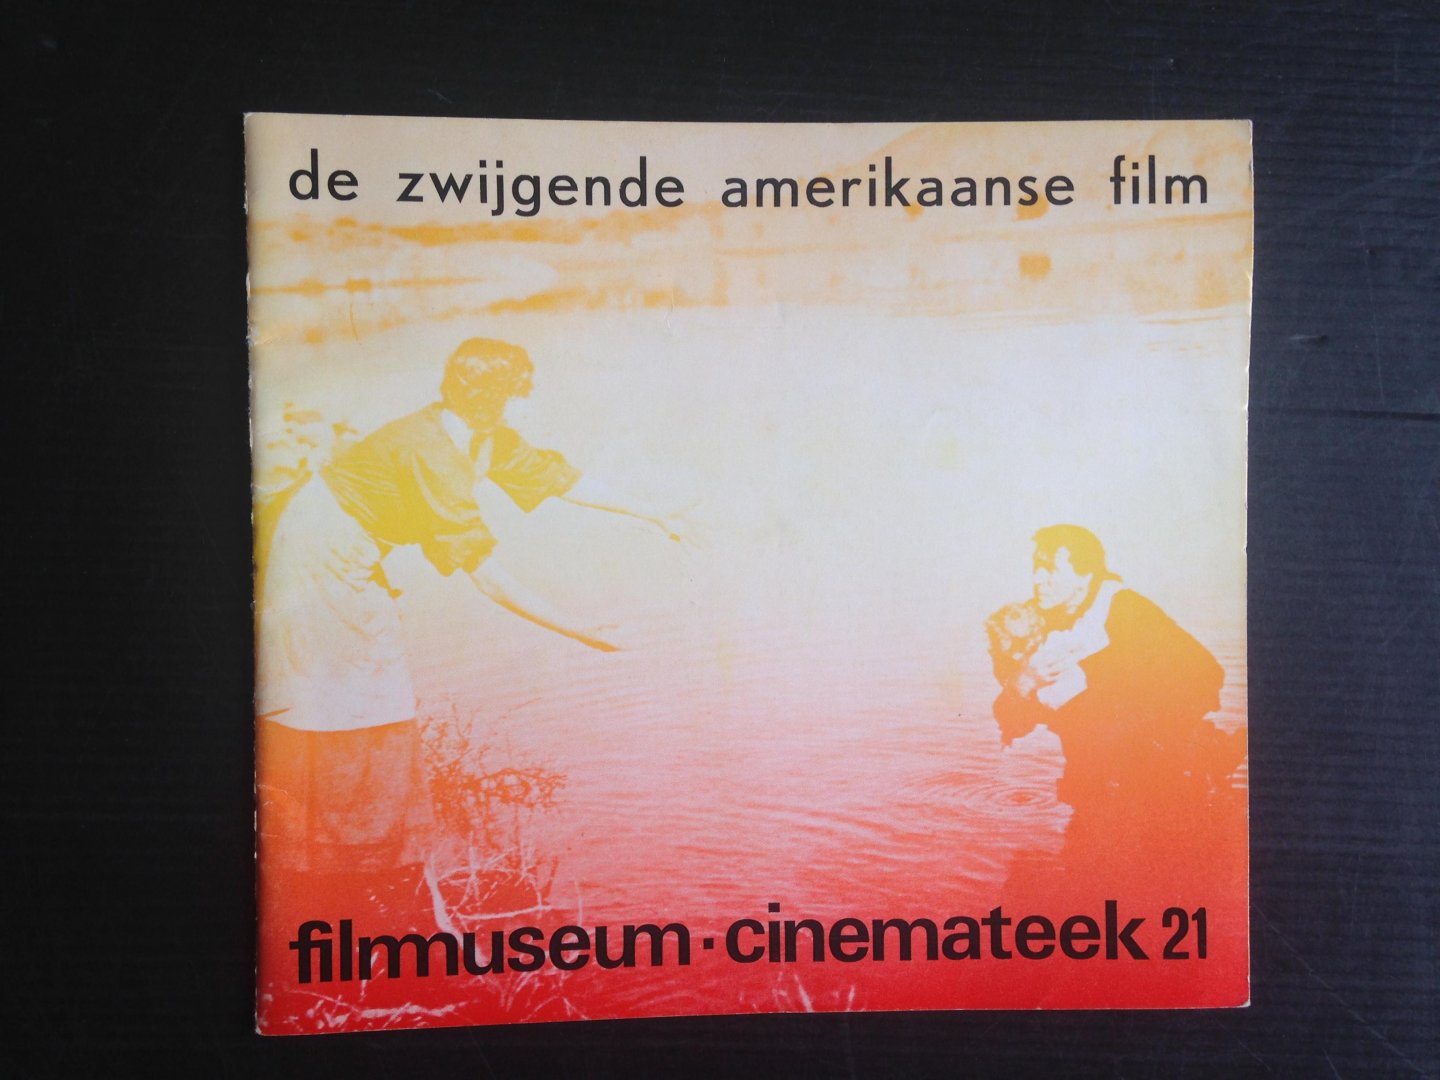  - De zwijgende amerikaanse film, Filmmuseum Cinemateek, Journaal 21